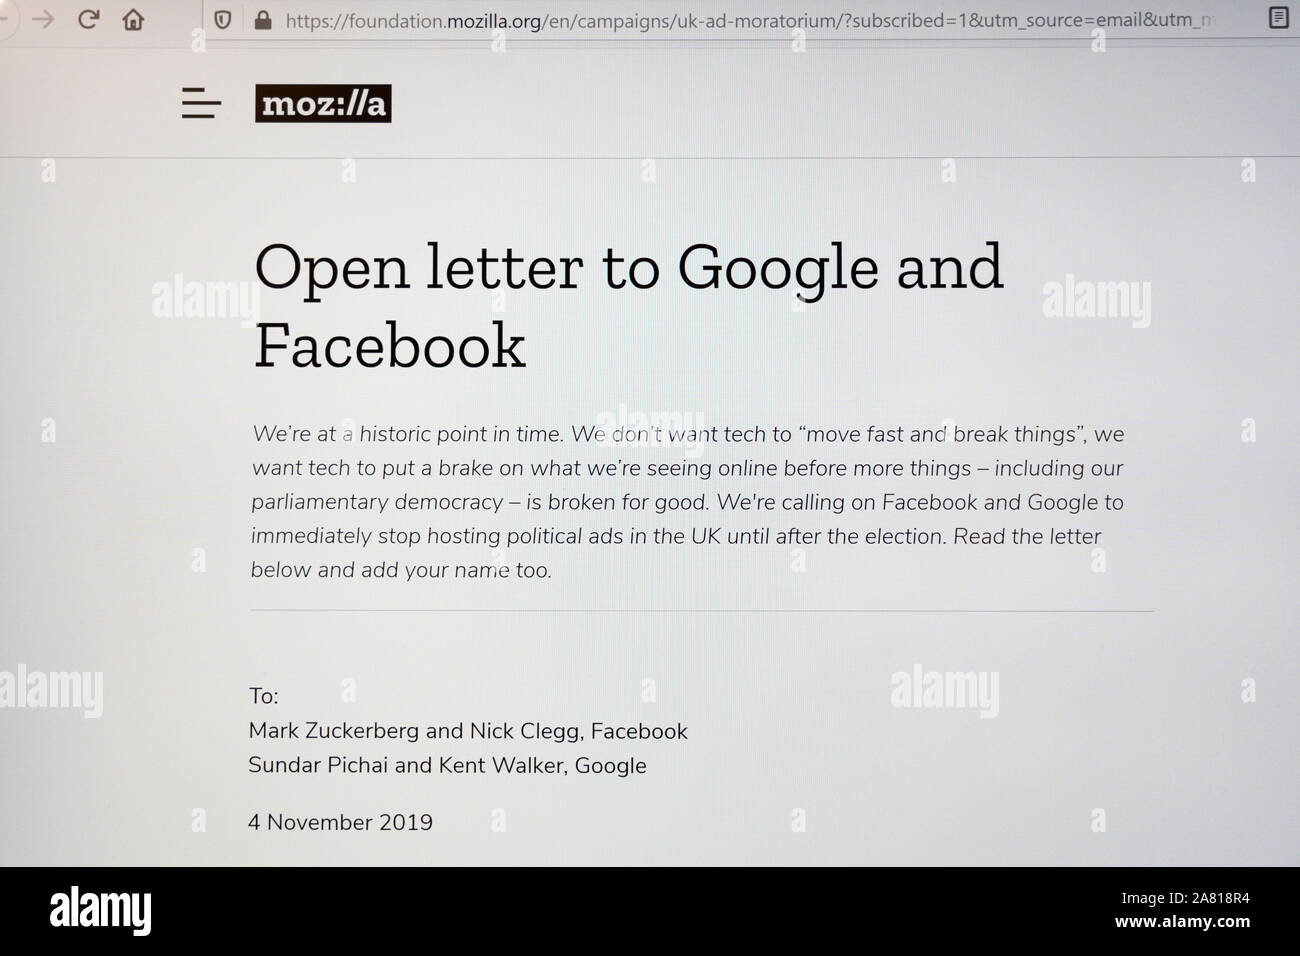 Ein offener Brief von Mozilla und anderen Aktivisten zu Facebook und Google fragt nach einem Verbot politischer Werbung vor den allgemeinen Wahlen in Großbritannien Stockfoto